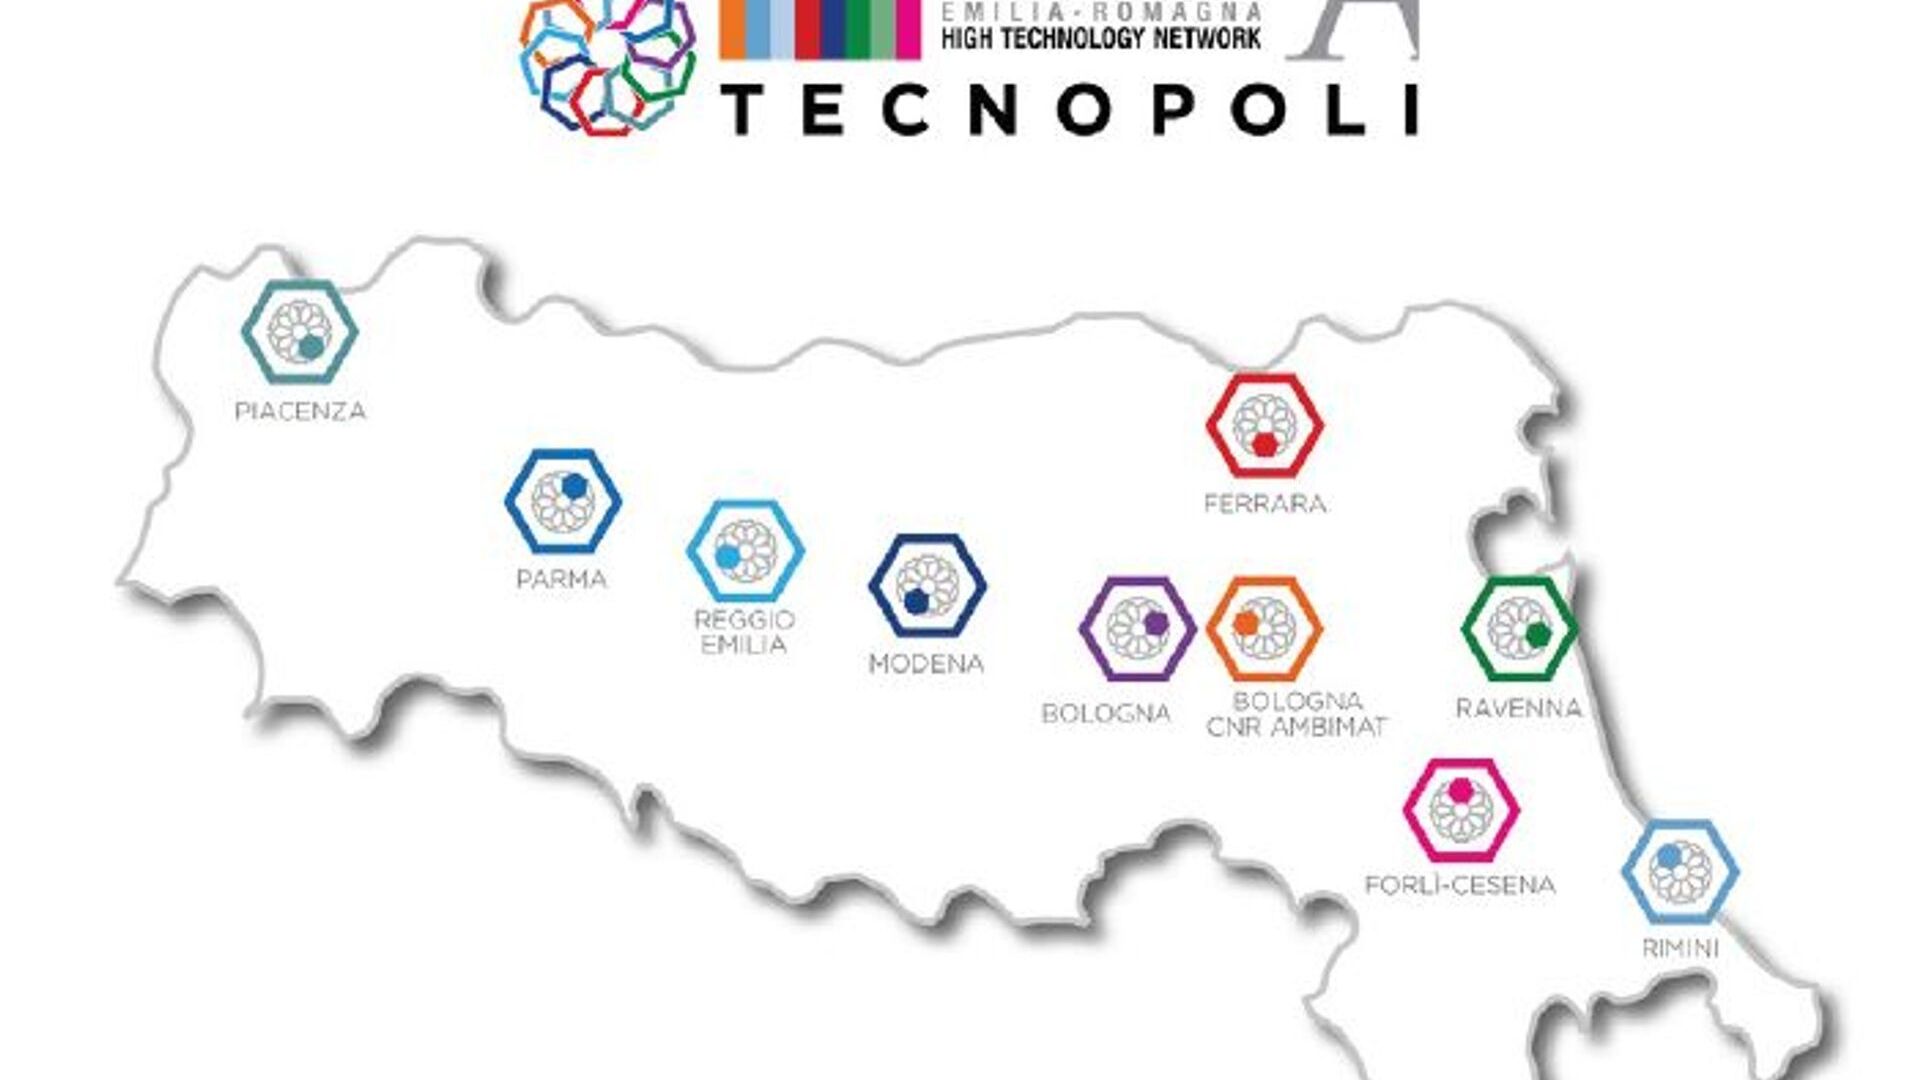 A Rede de Alta Tecnologia da Região Emilia-Romagna